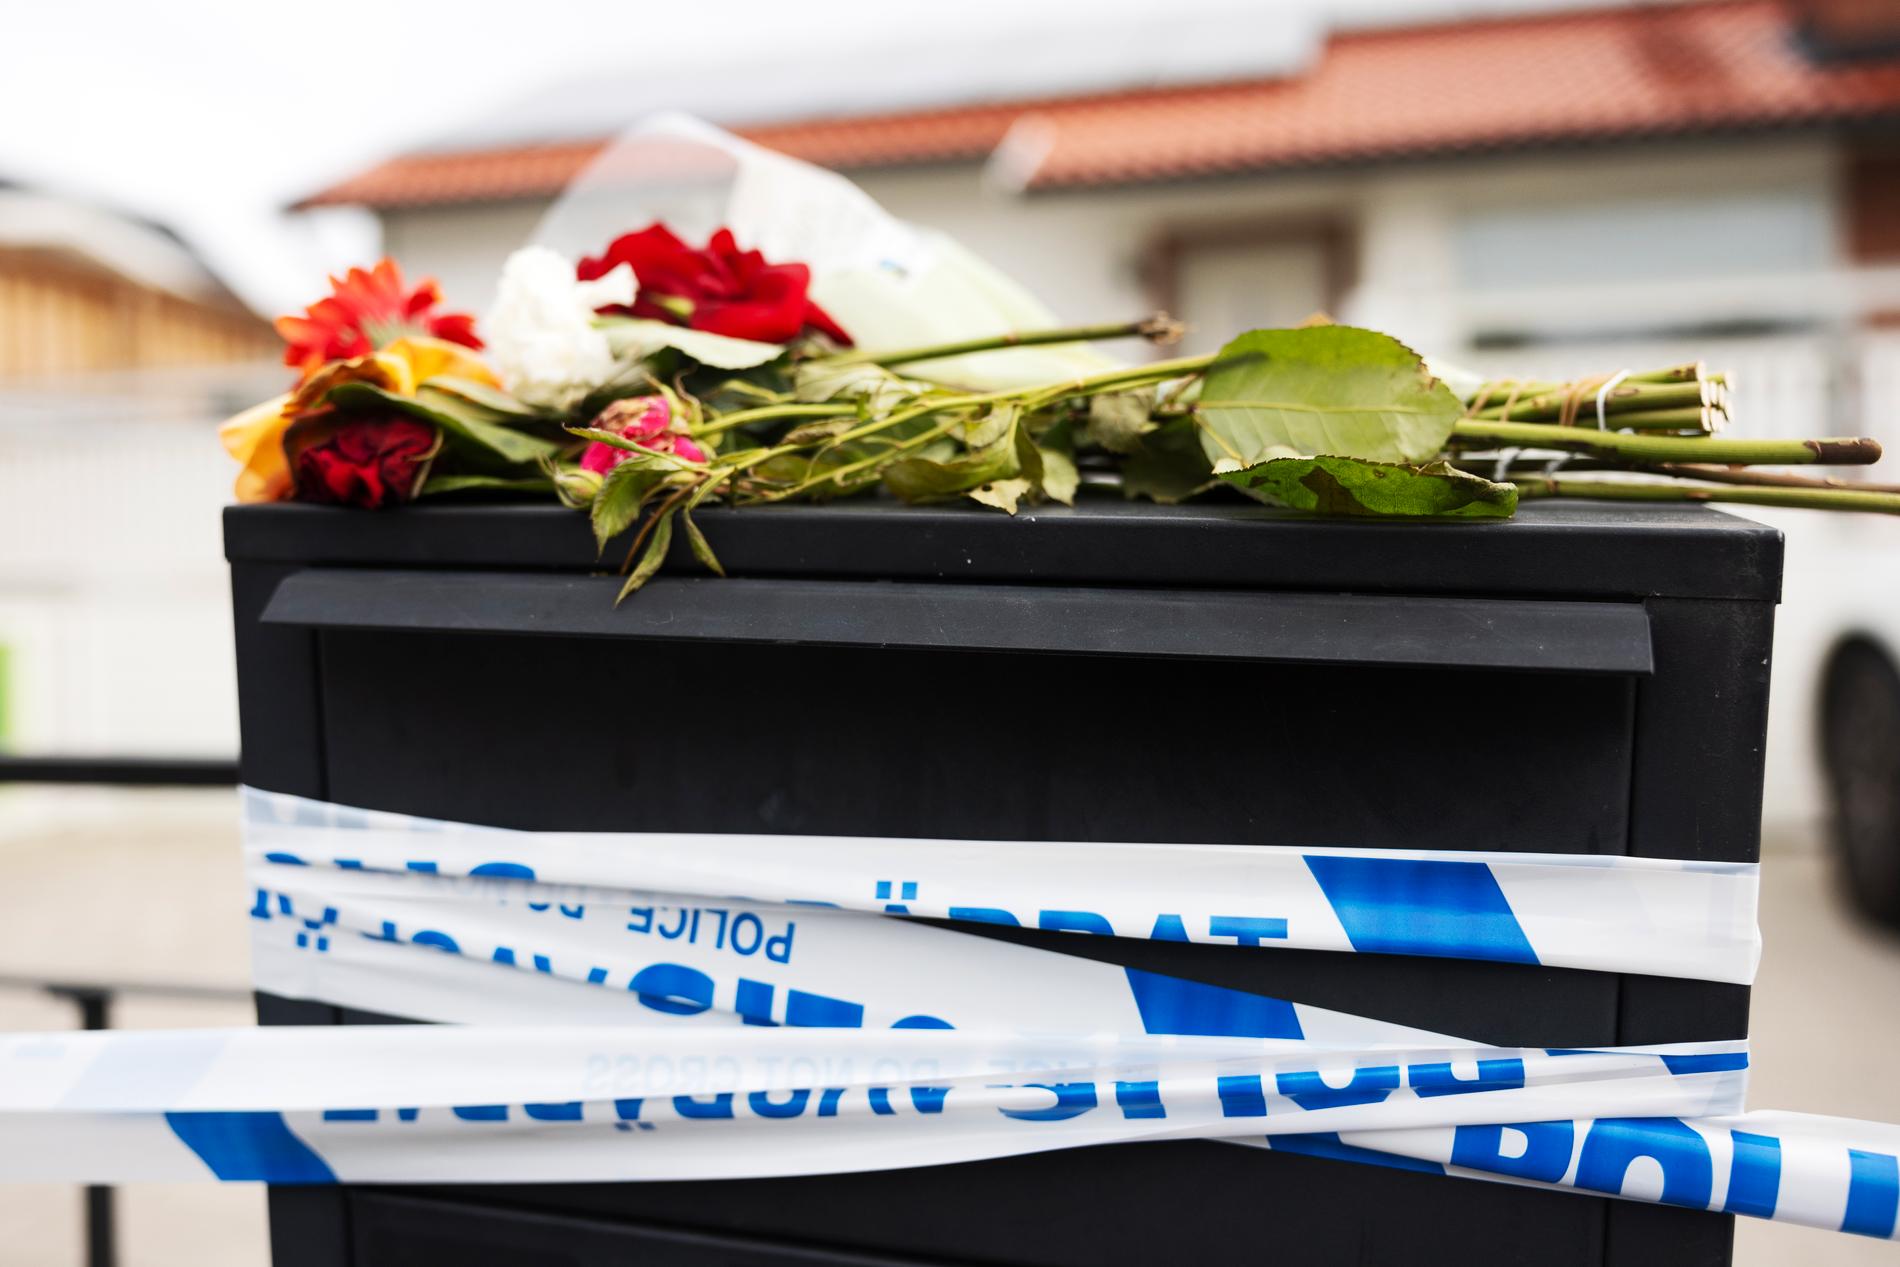 Våldsdåden skakar grannskapet. En brevlåda får hålla upp polisens avspärrningsband. Någon har lagt dit blommor. 